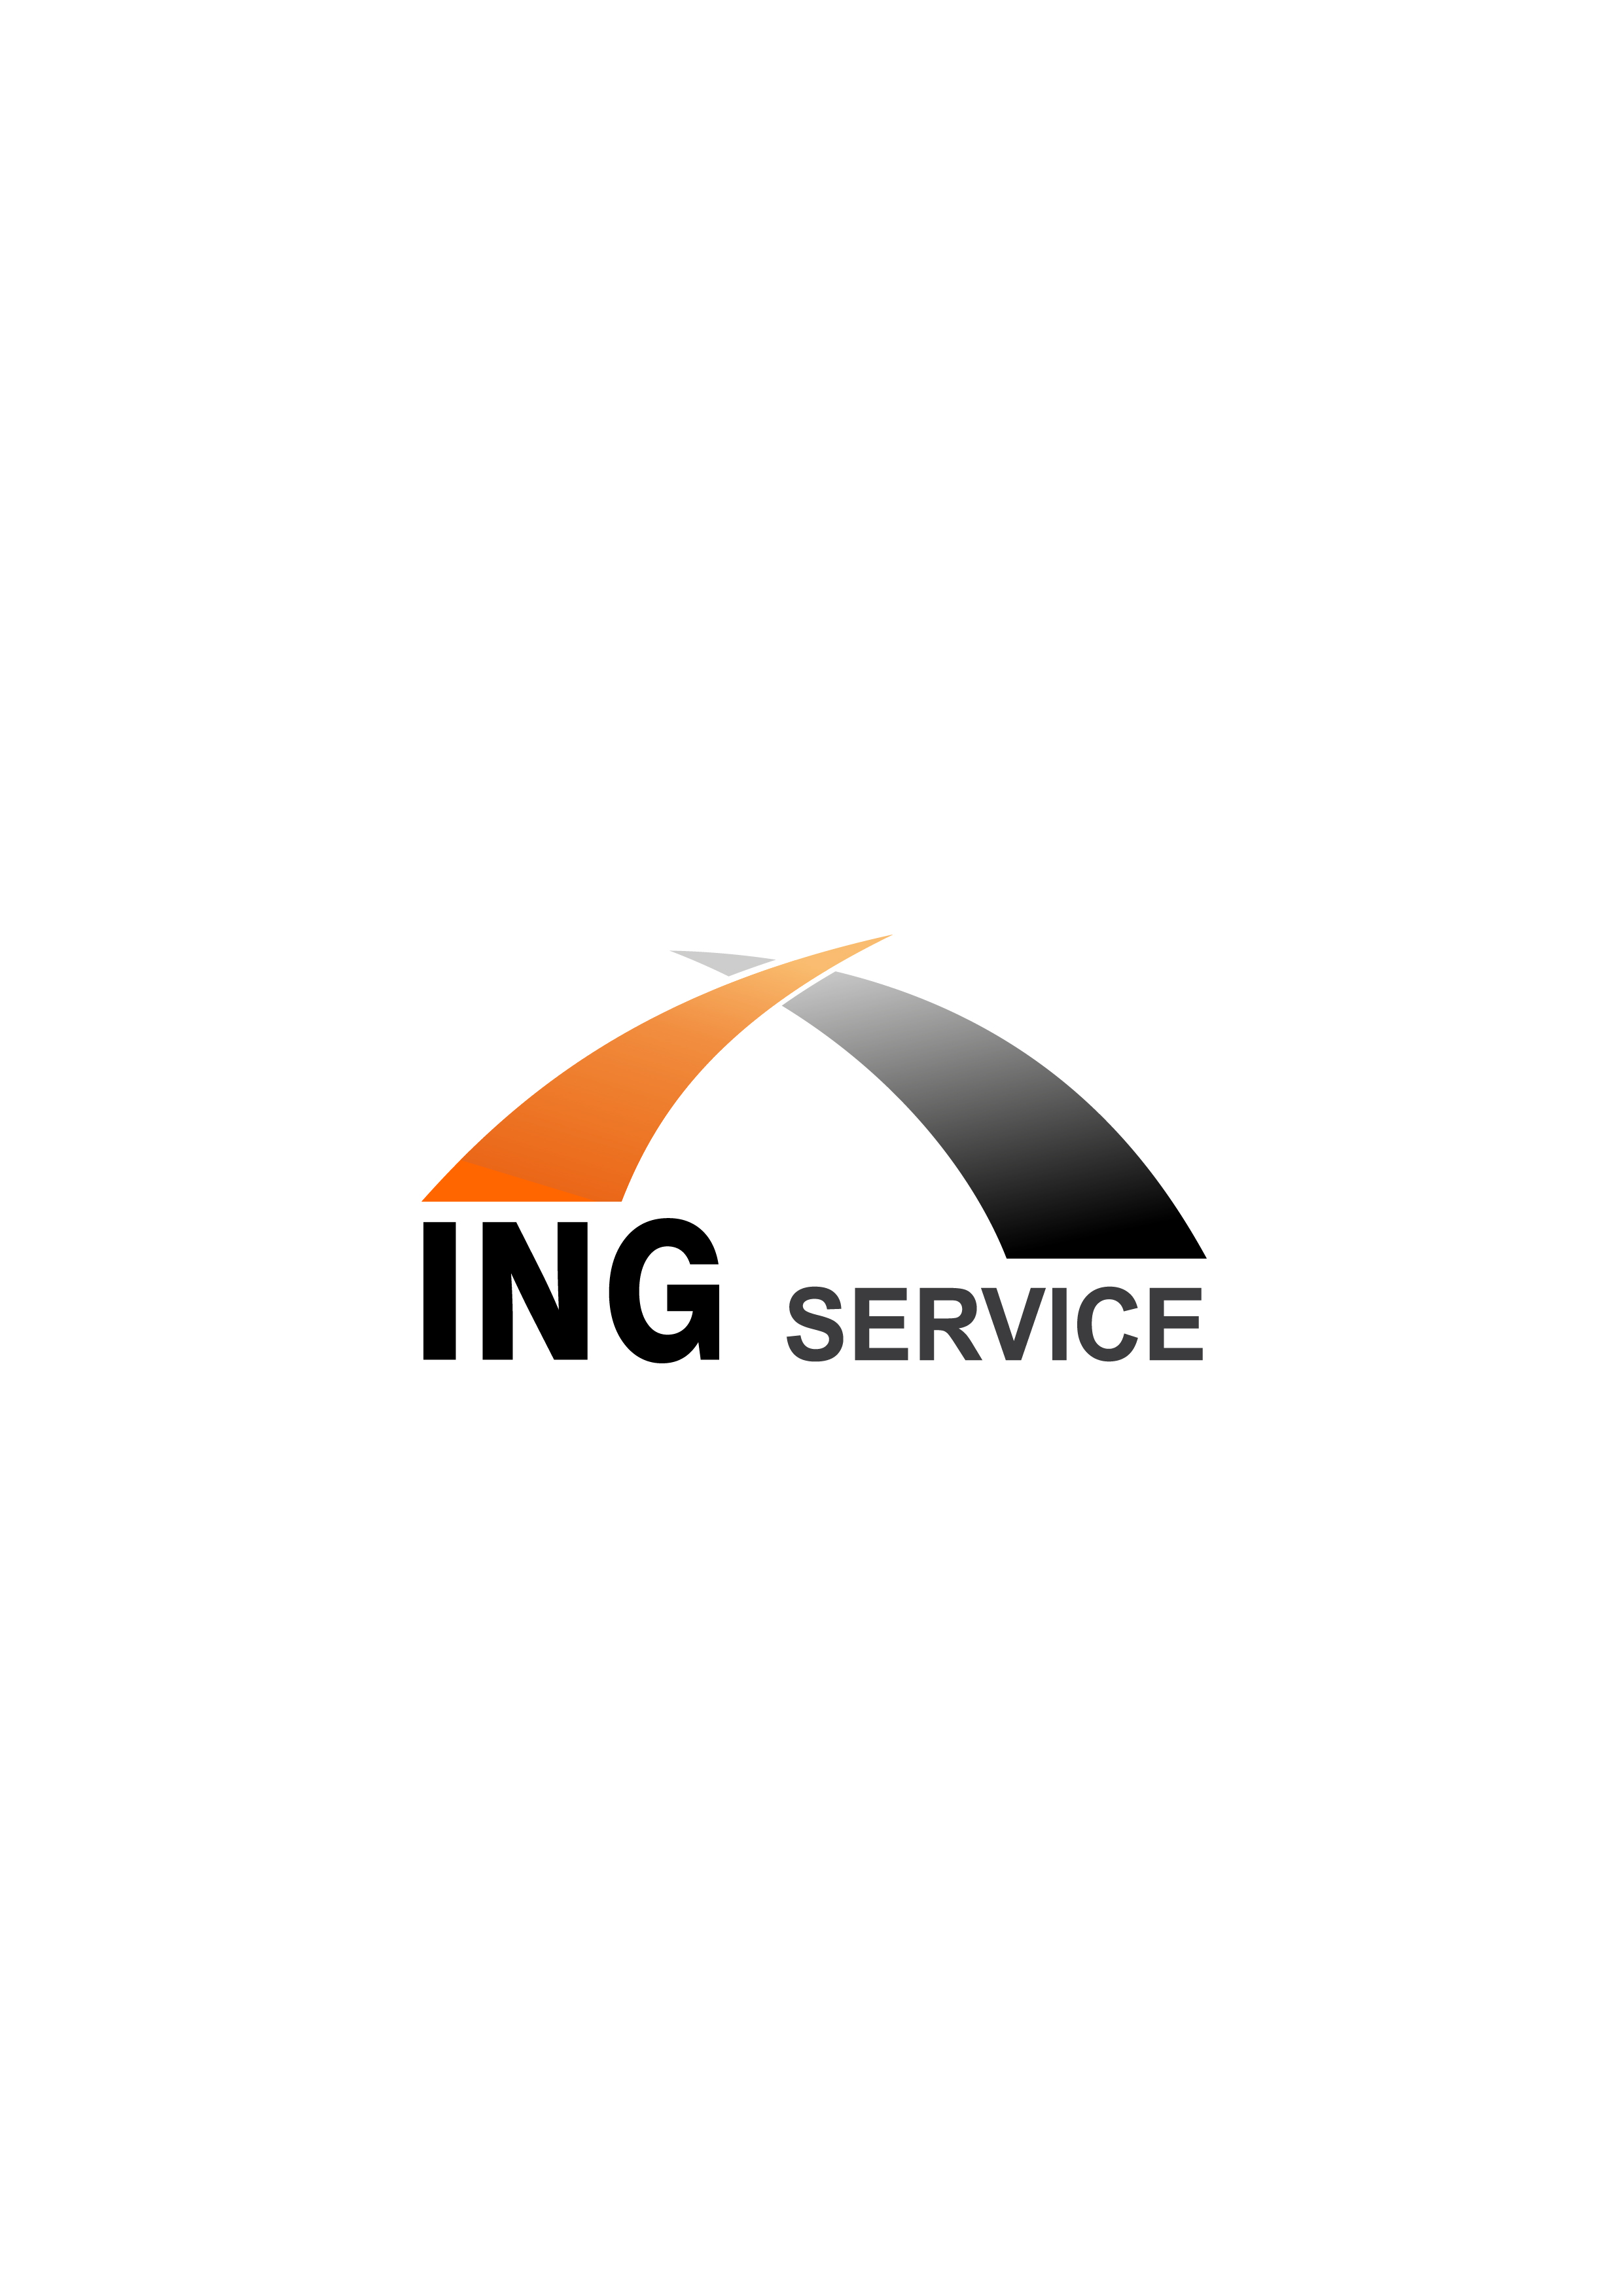 ING Service